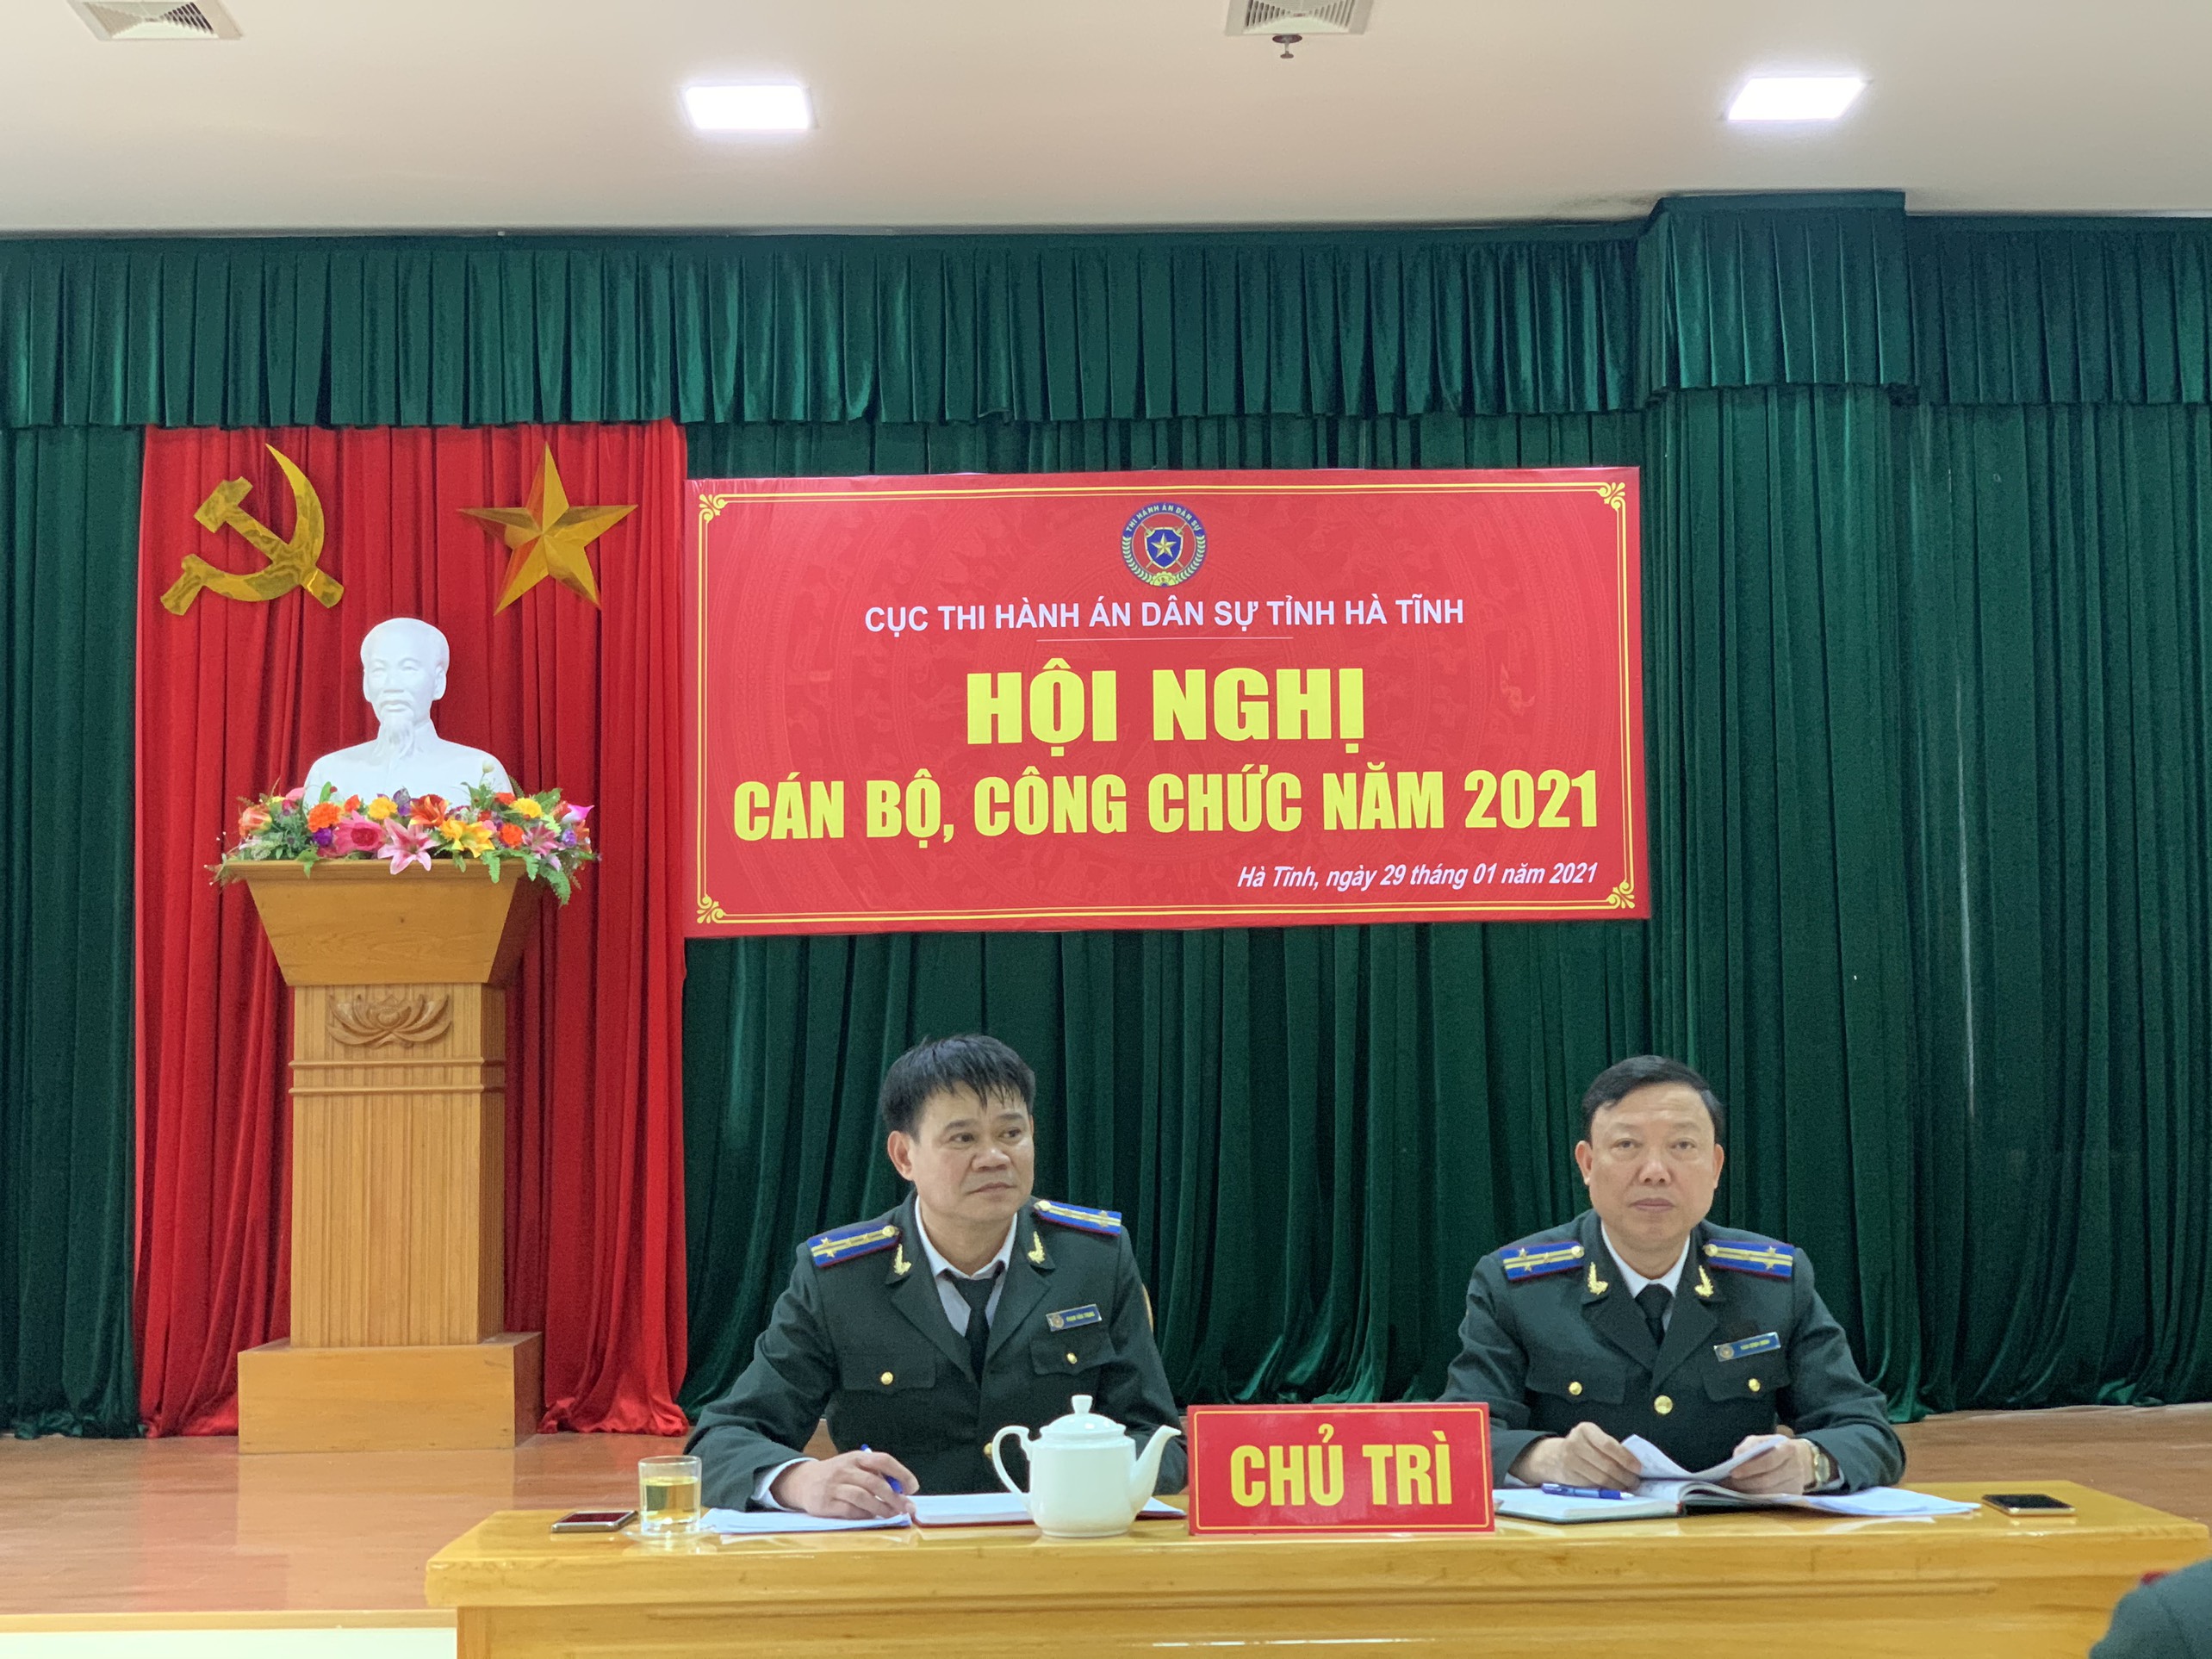 Cục Thi hành án dân sự tỉnh Hà Tĩnh tổ chức Hội nghị cán bộ công chức năm 2021.